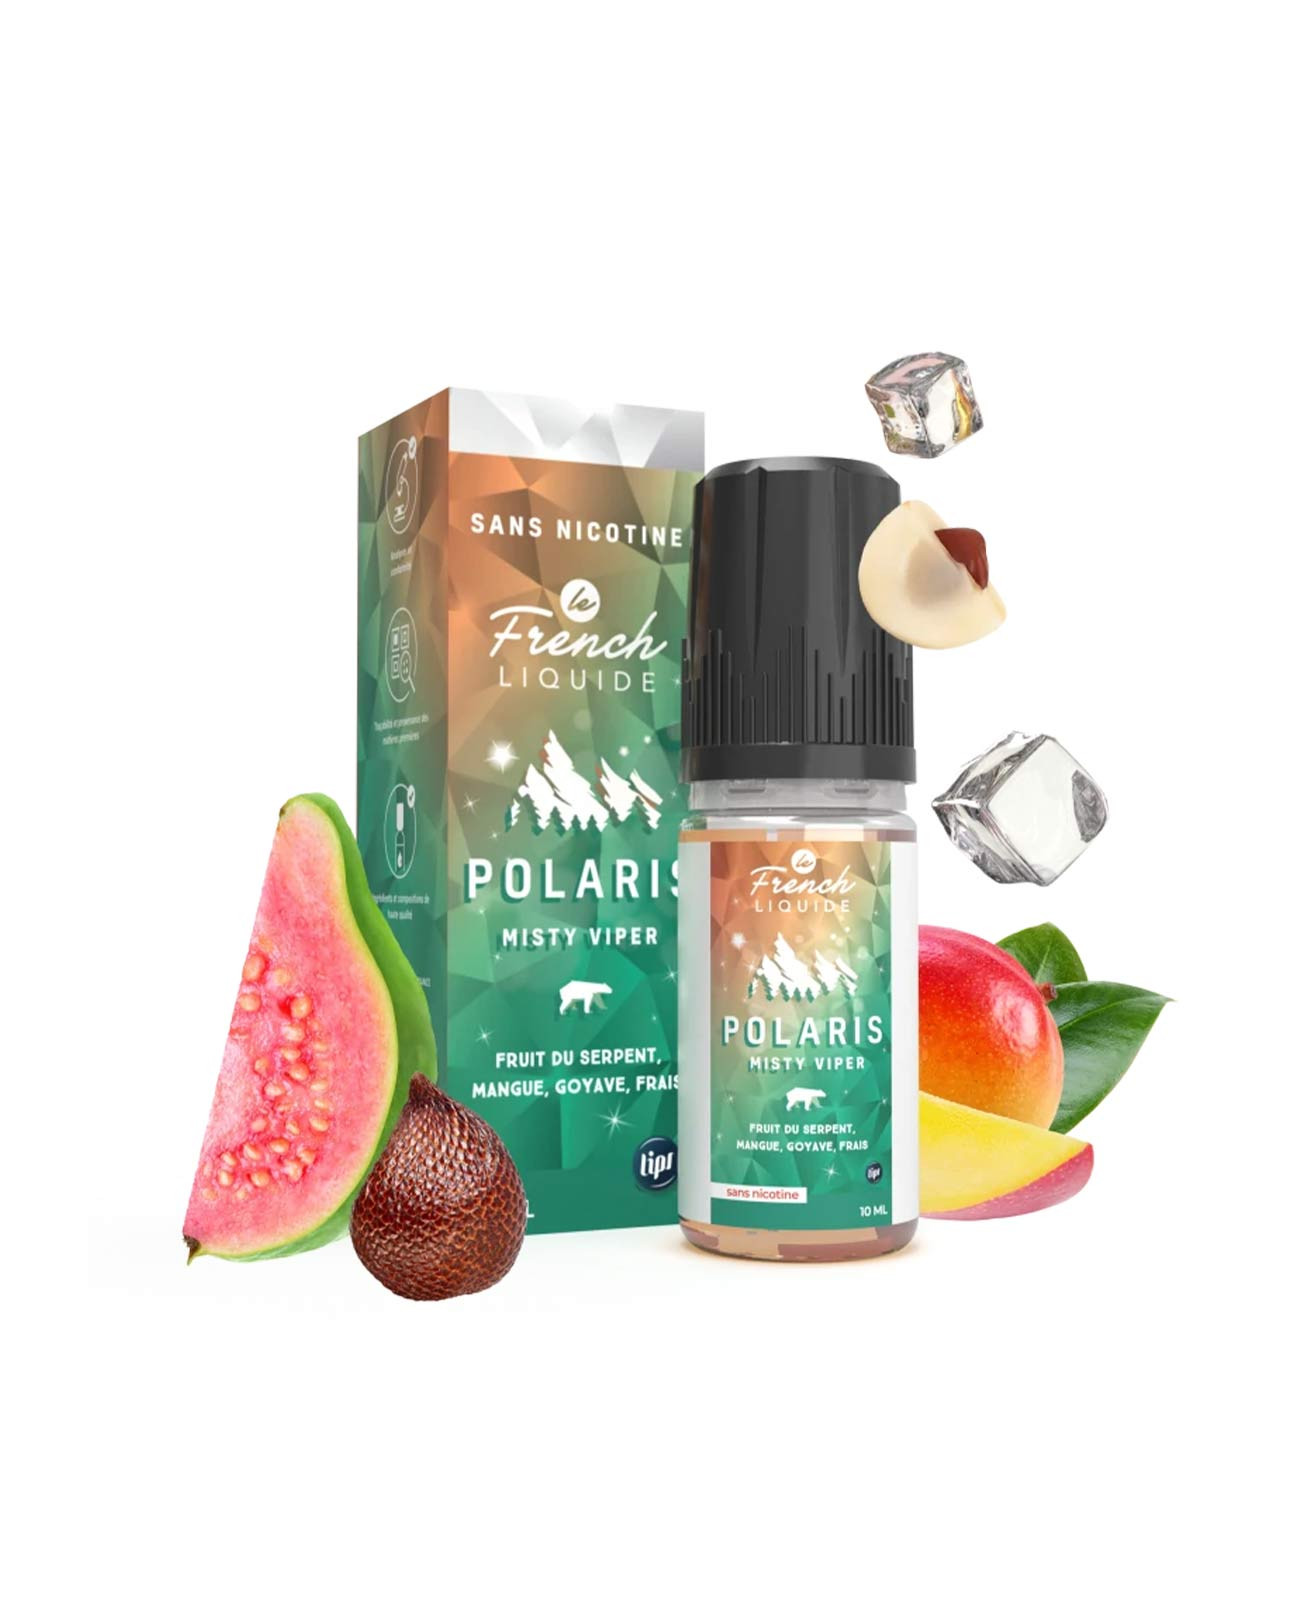 E-liquide Misty Viper Polaris avec sa boîte parfum fruit du serpent goyave et mangue